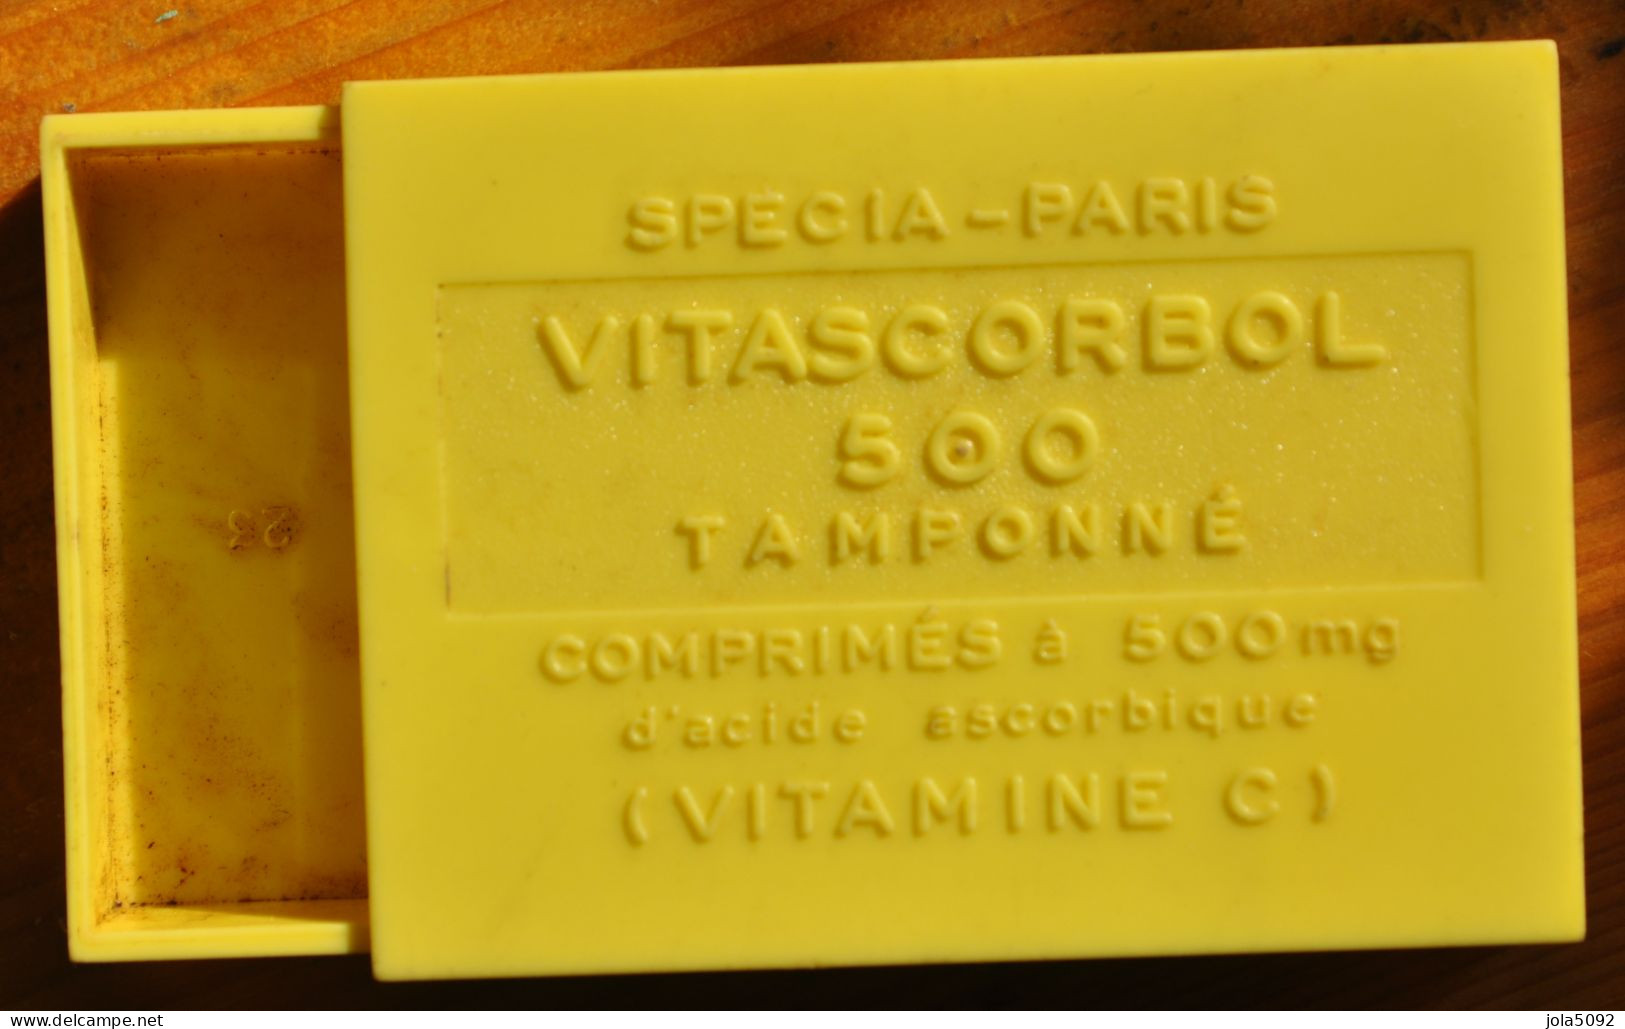 Ancienne Boite En Plastique Pastilles VITASCORBOL 500 - Vitamines C - SPECIA PARIS - Boxes